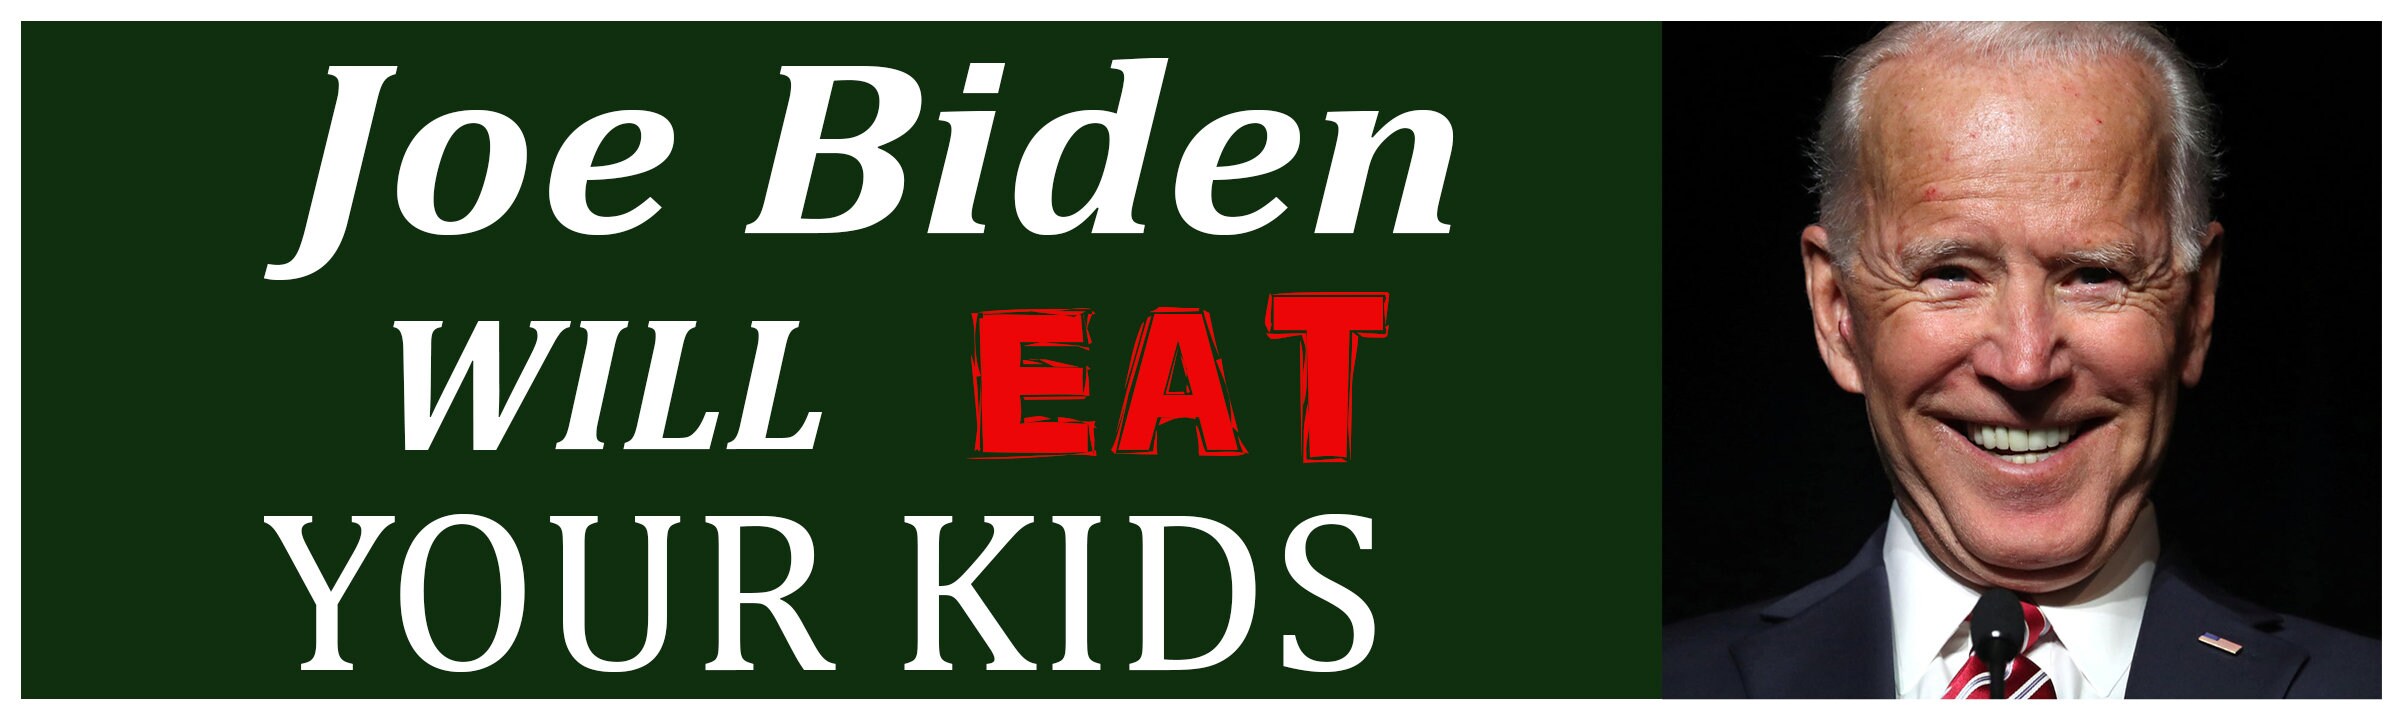 Anti Democrat Anti Biden Harris Biden Eat Your Kids Sleepy Joe Bumper Sticker 